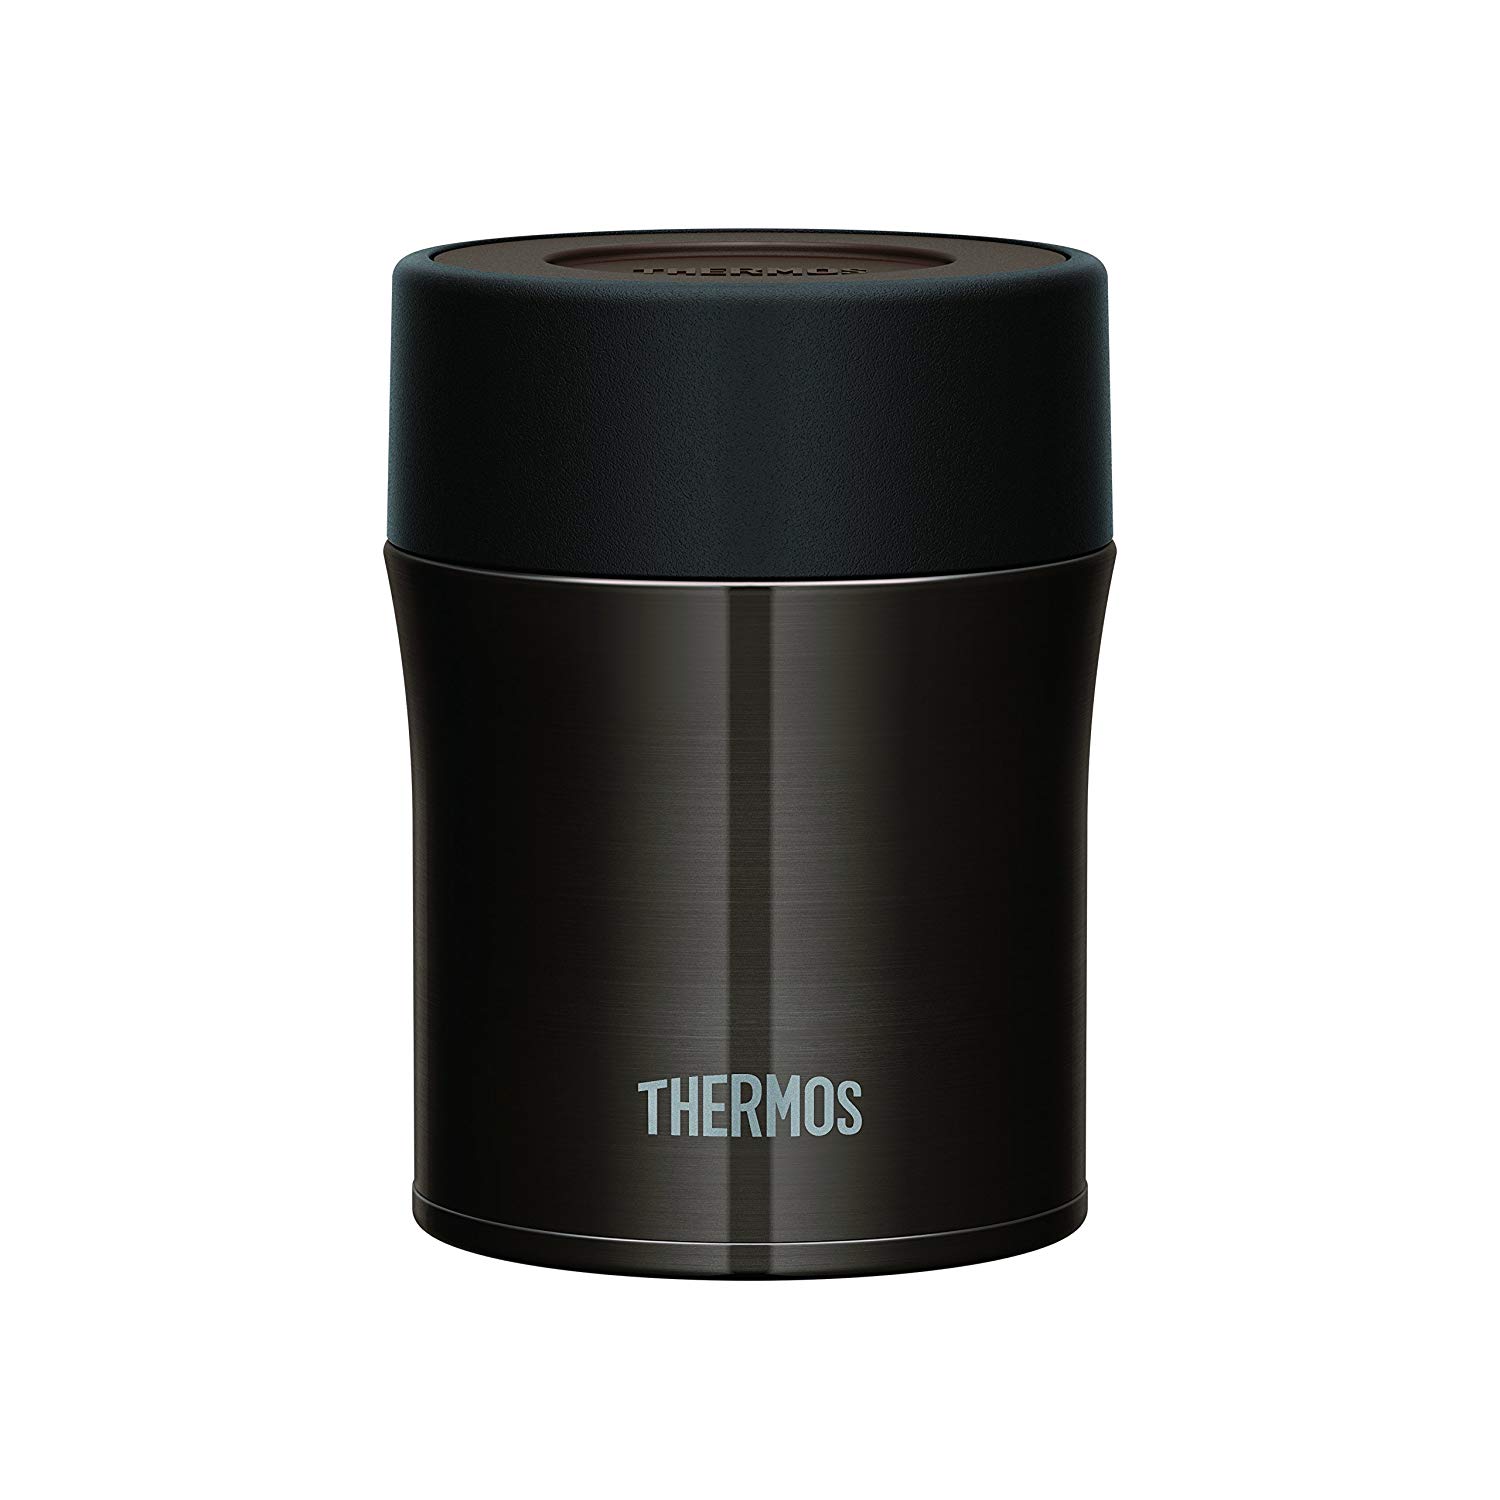 Thermos 真空断熱フードコンテナー 0.5L ブラック